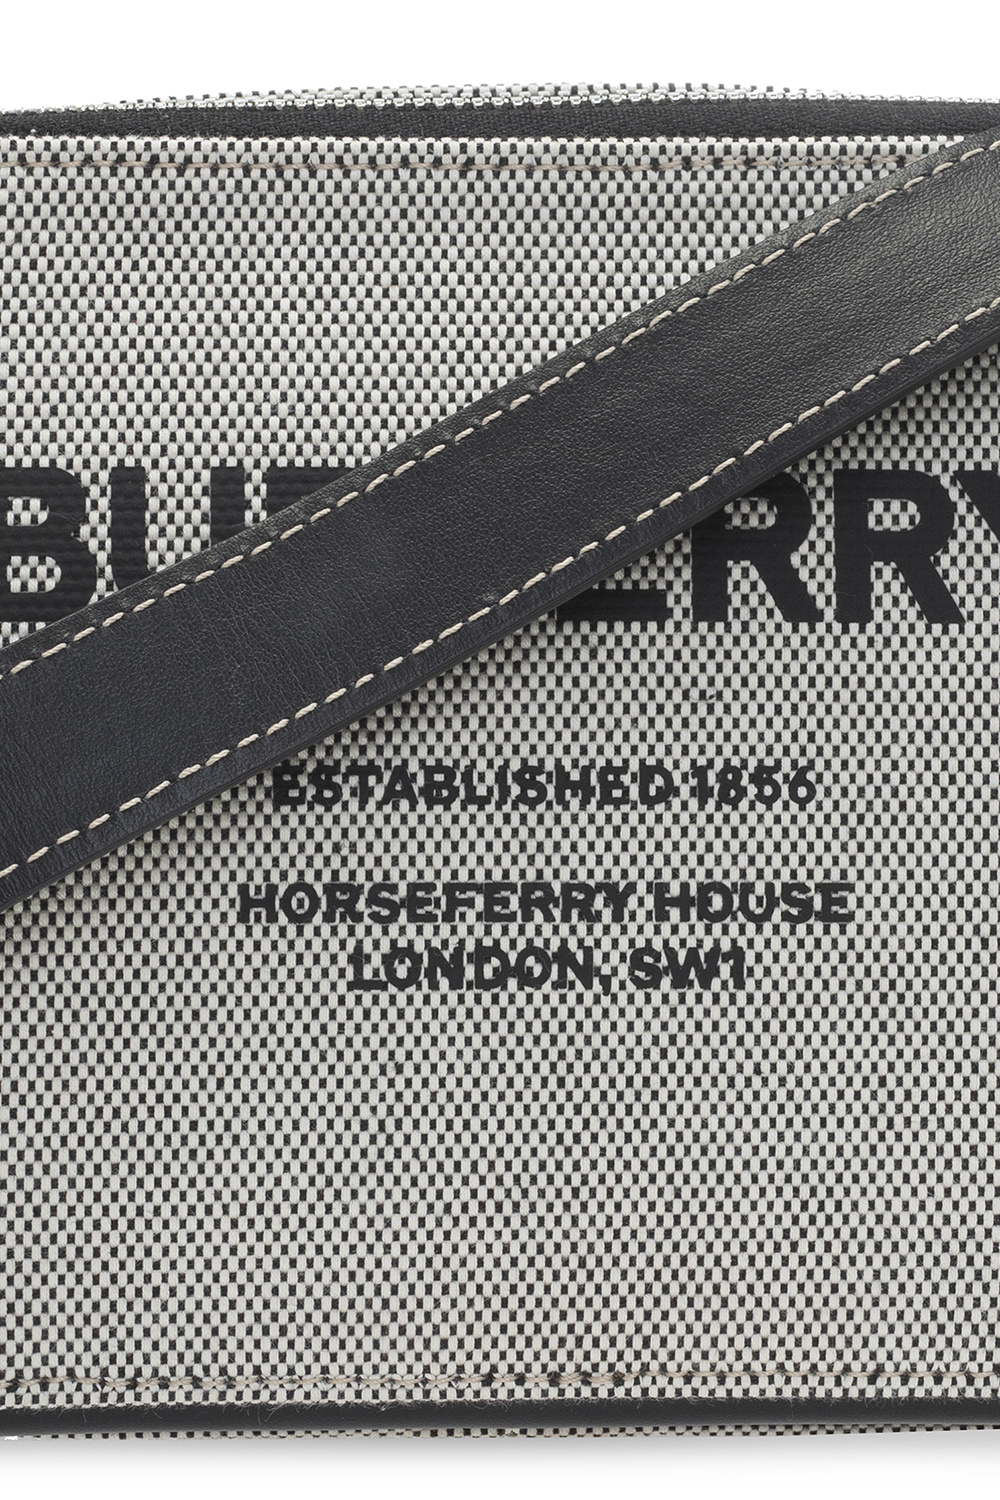 Burberry MEN FLAT SHOES BUCKLED - 'Horseferry' shoulder bag